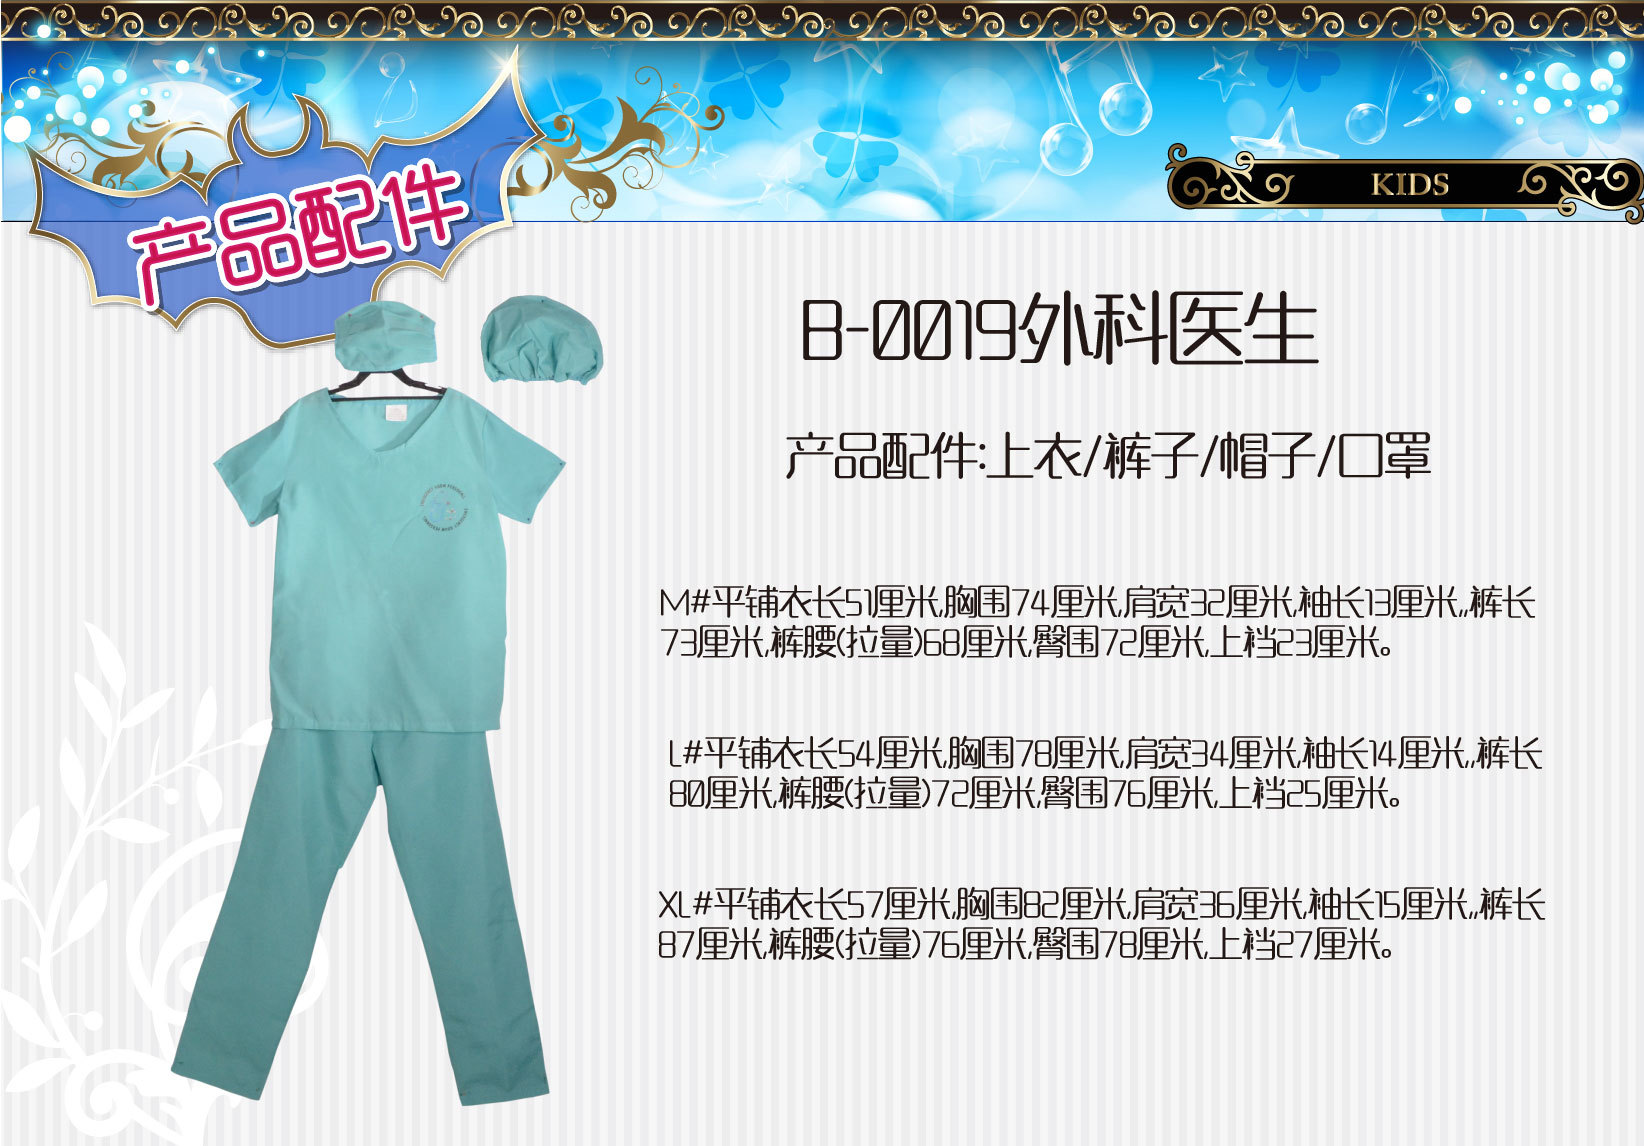 焕佑,cosplay,化妆舞会万圣派对游戏表演服装,B-0019外科医生服装详情4